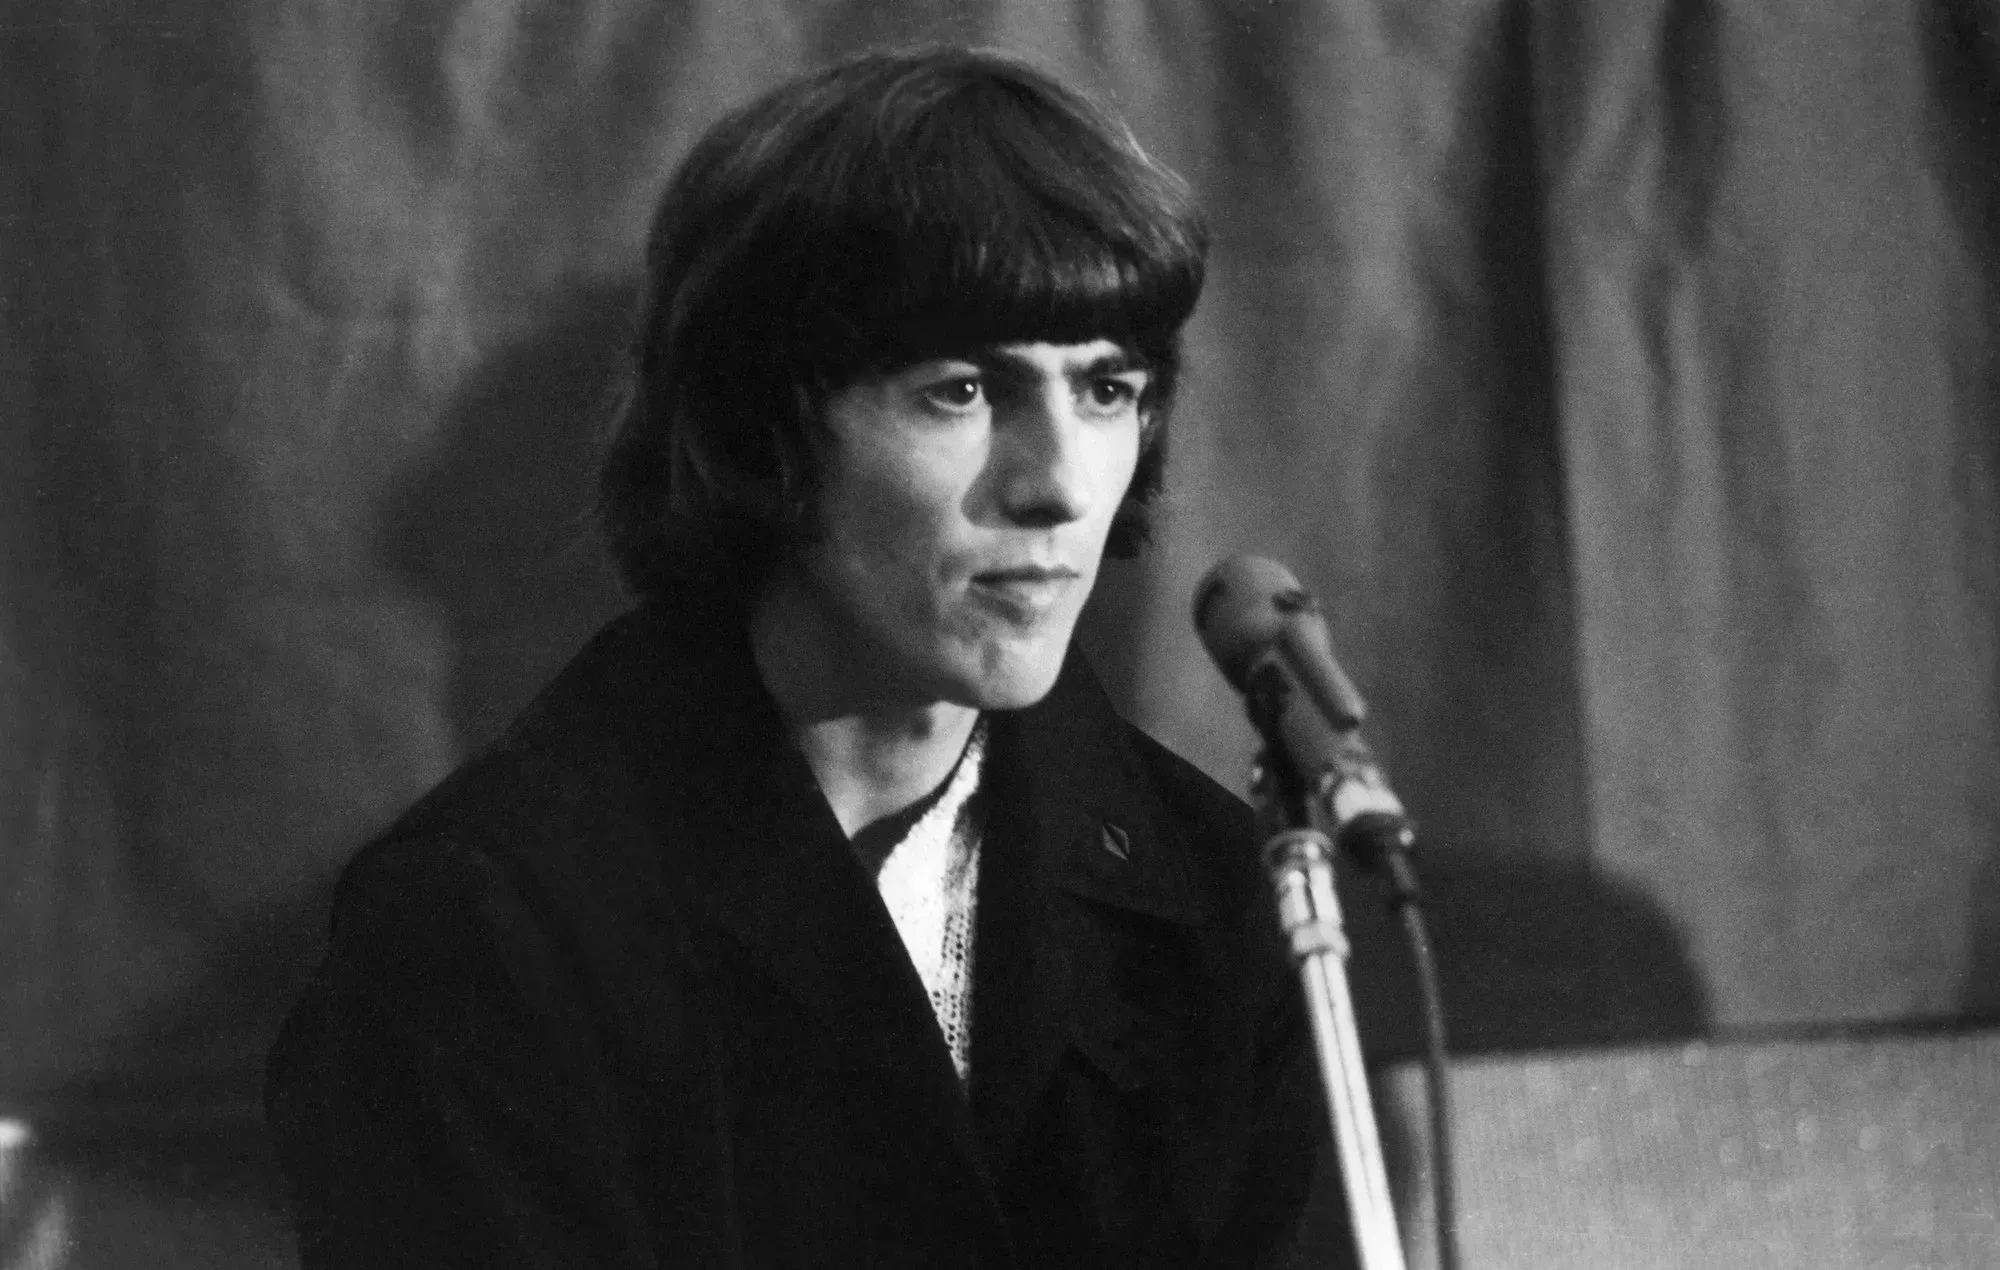 Echa un vistazo a esta lista de reproducción de la gramola de George Harrison de 1965